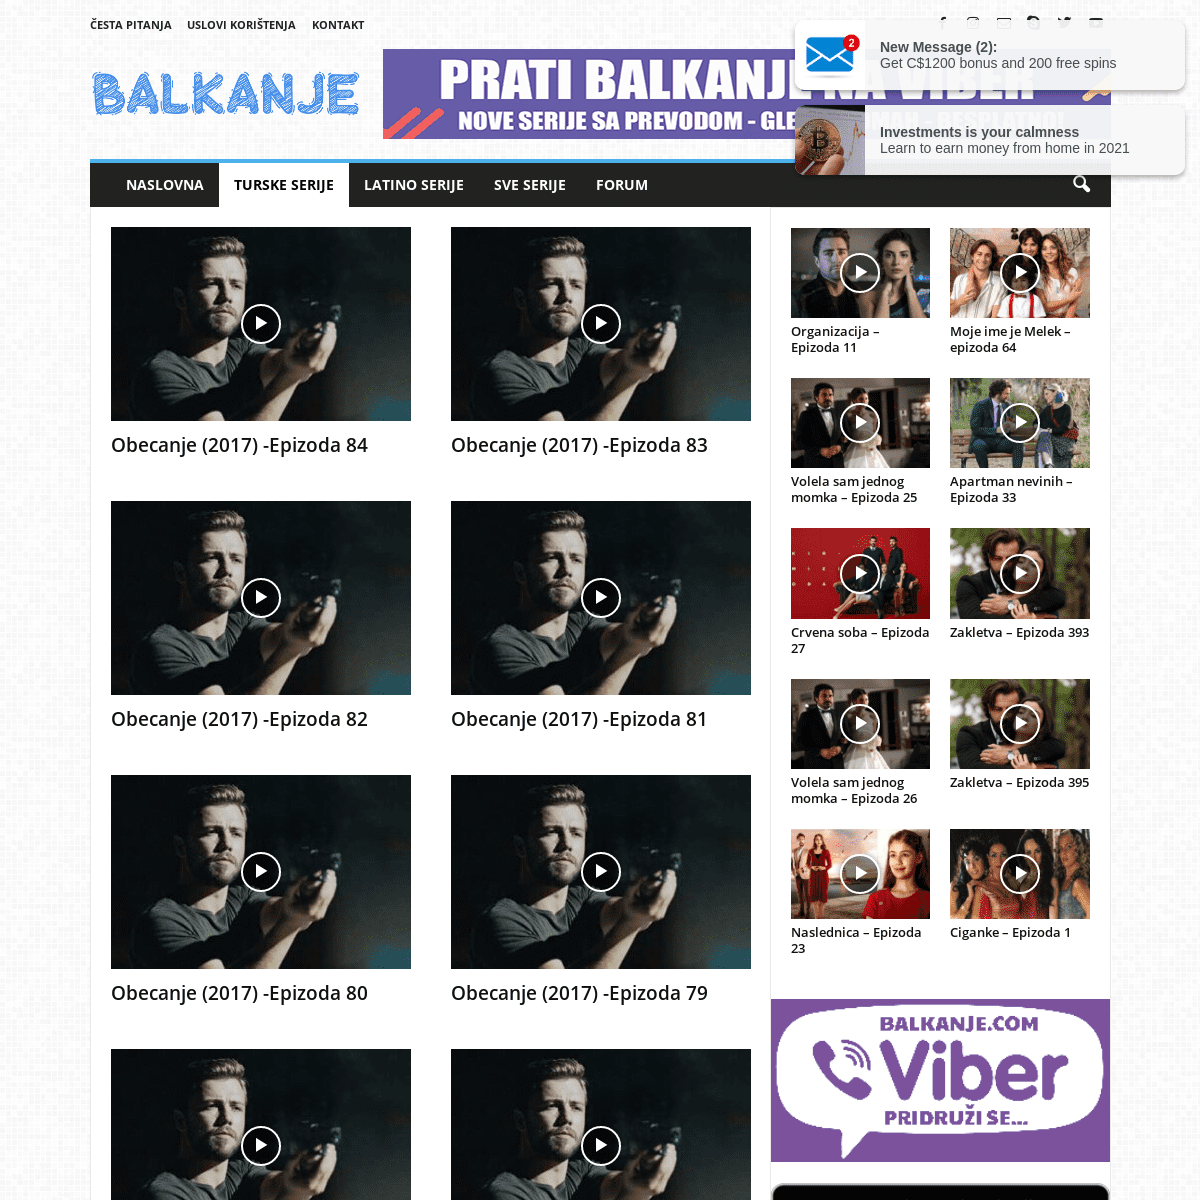 A complete backup of https://balkanje.com/turske-serije/obecanje-2017/